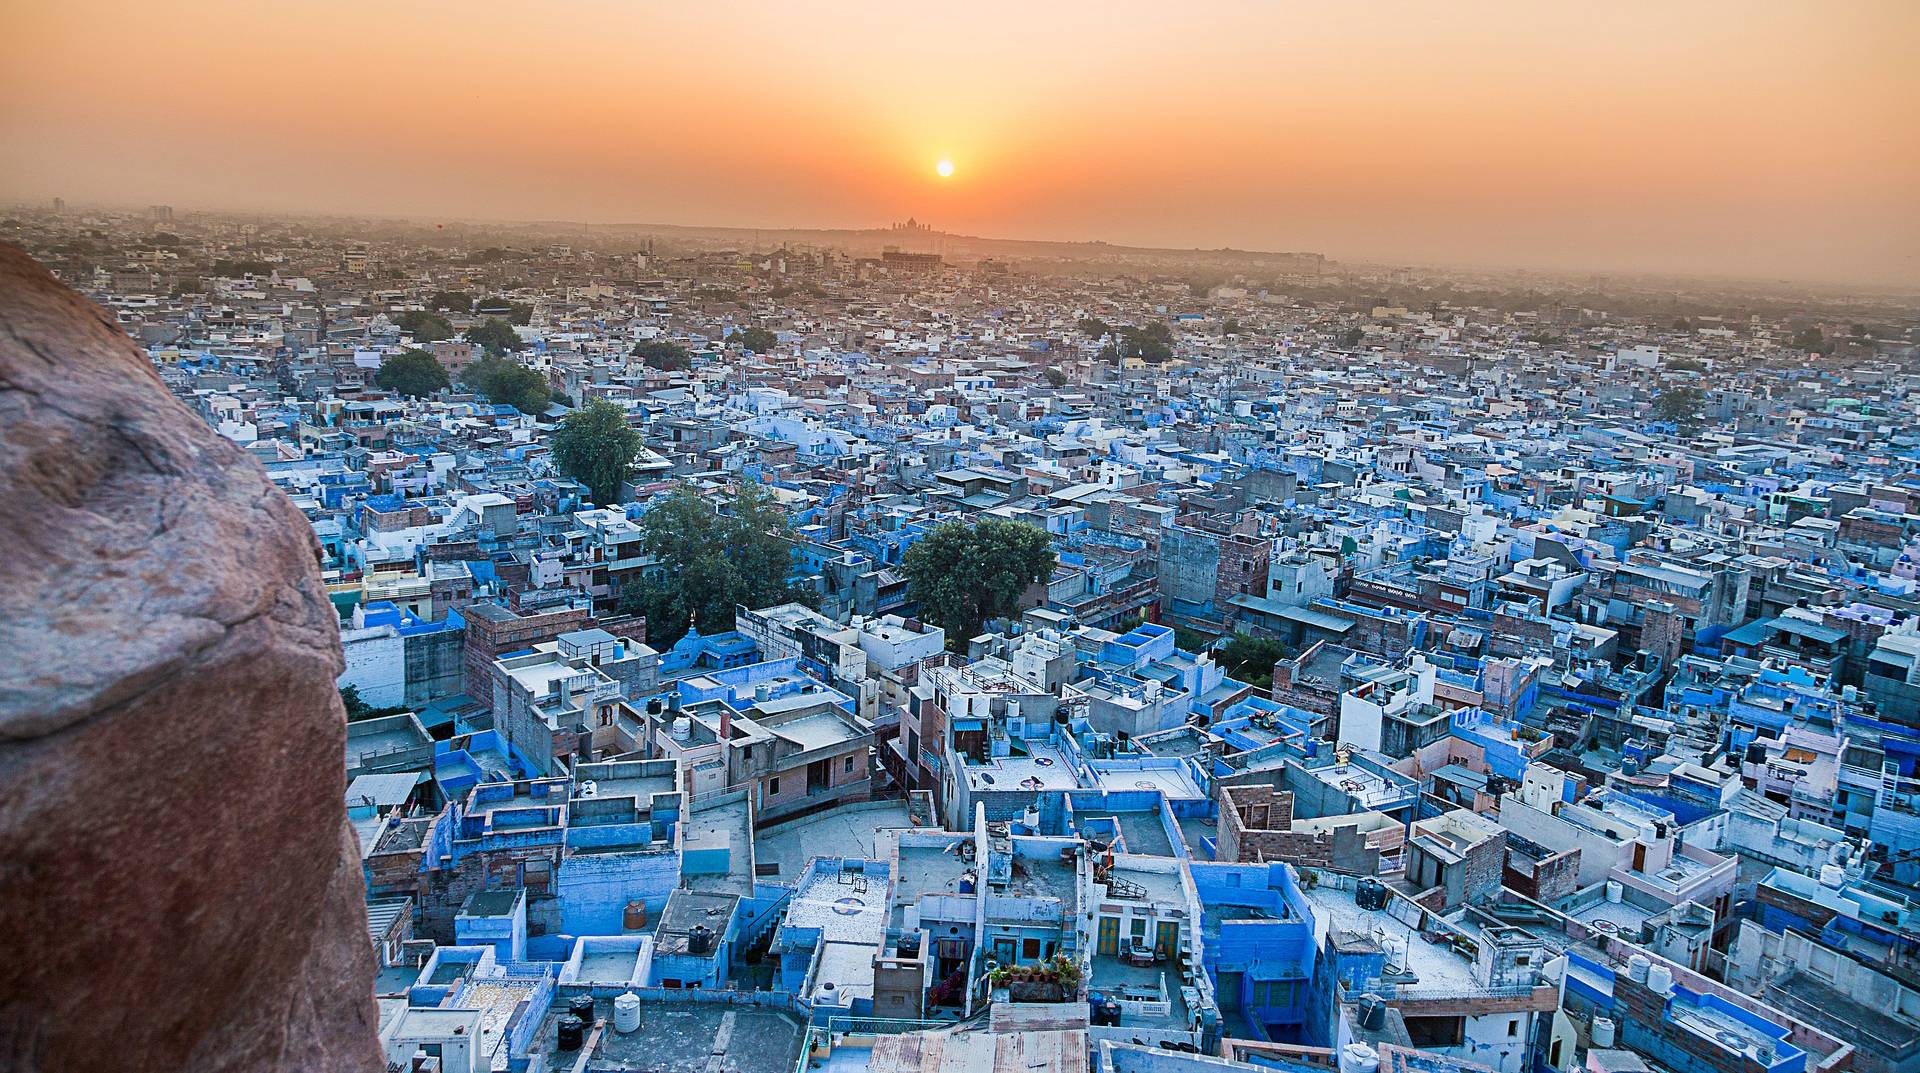 Jodhpur Blue City